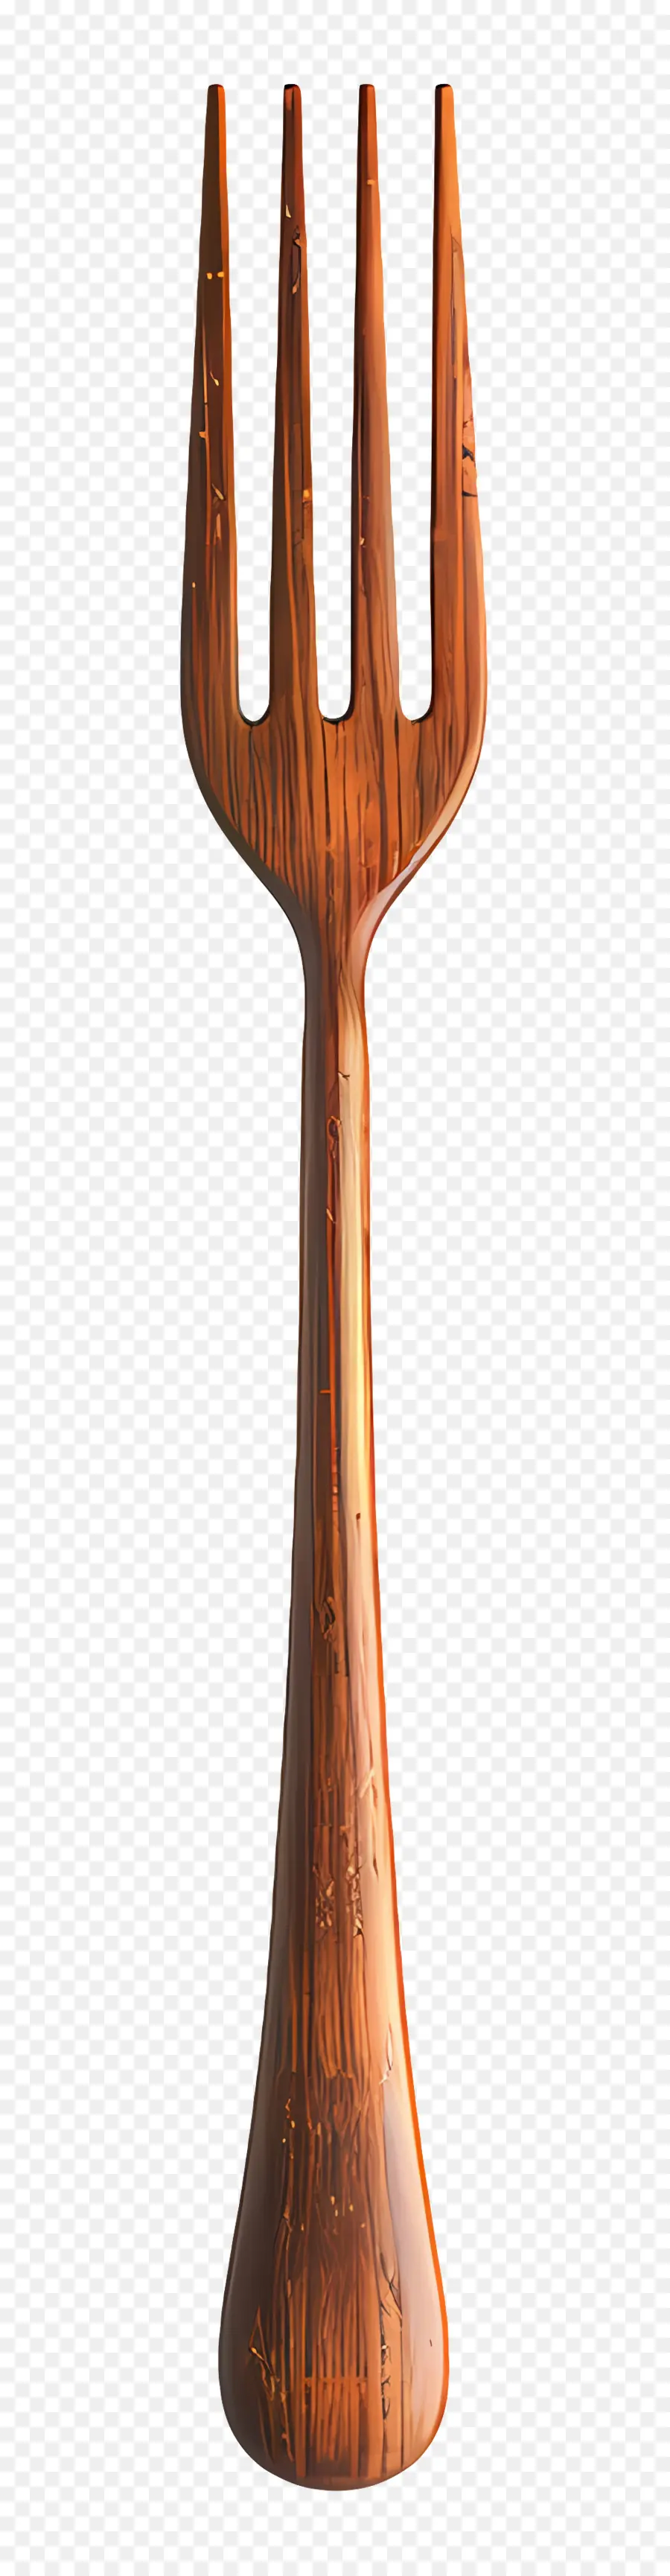 Fork Wood Vòng tay chạm khắc gai nhọn thiết kế phức tạp - Dây đeo bằng gỗ được đánh bóng phức tạp với gai chạm khắc